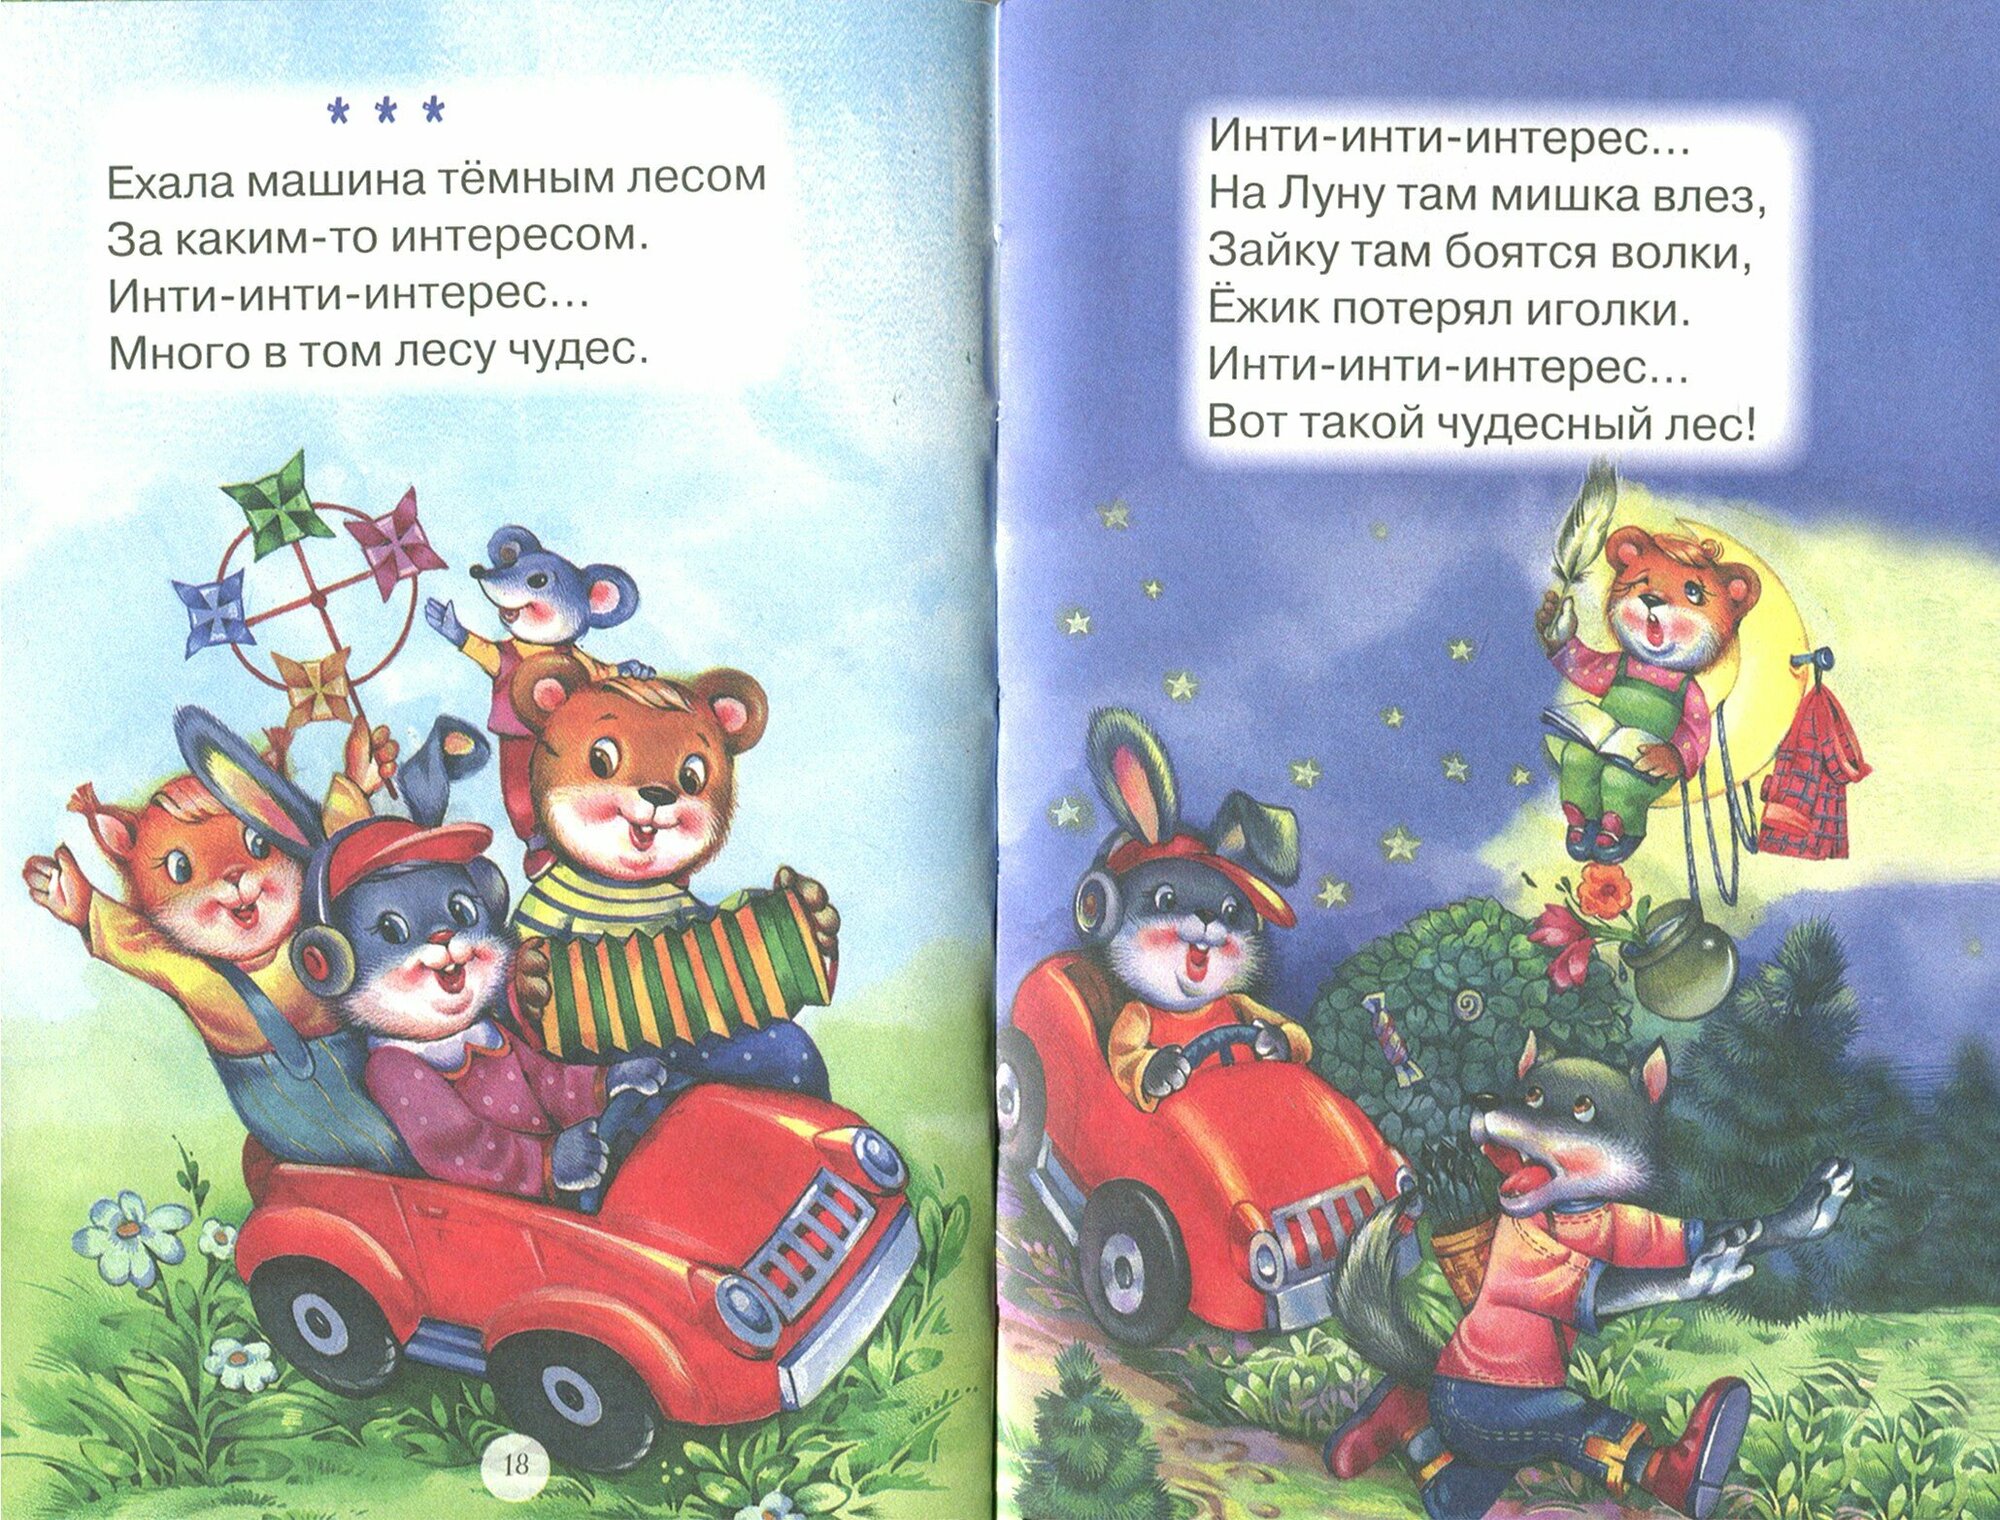 Тише, мыши - кот на крыше! (Красовская Инна А. (иллюстратор), Дядечко А. (иллюстратор), Гвиниашвили Светлана (иллюстратор)) - фото №9